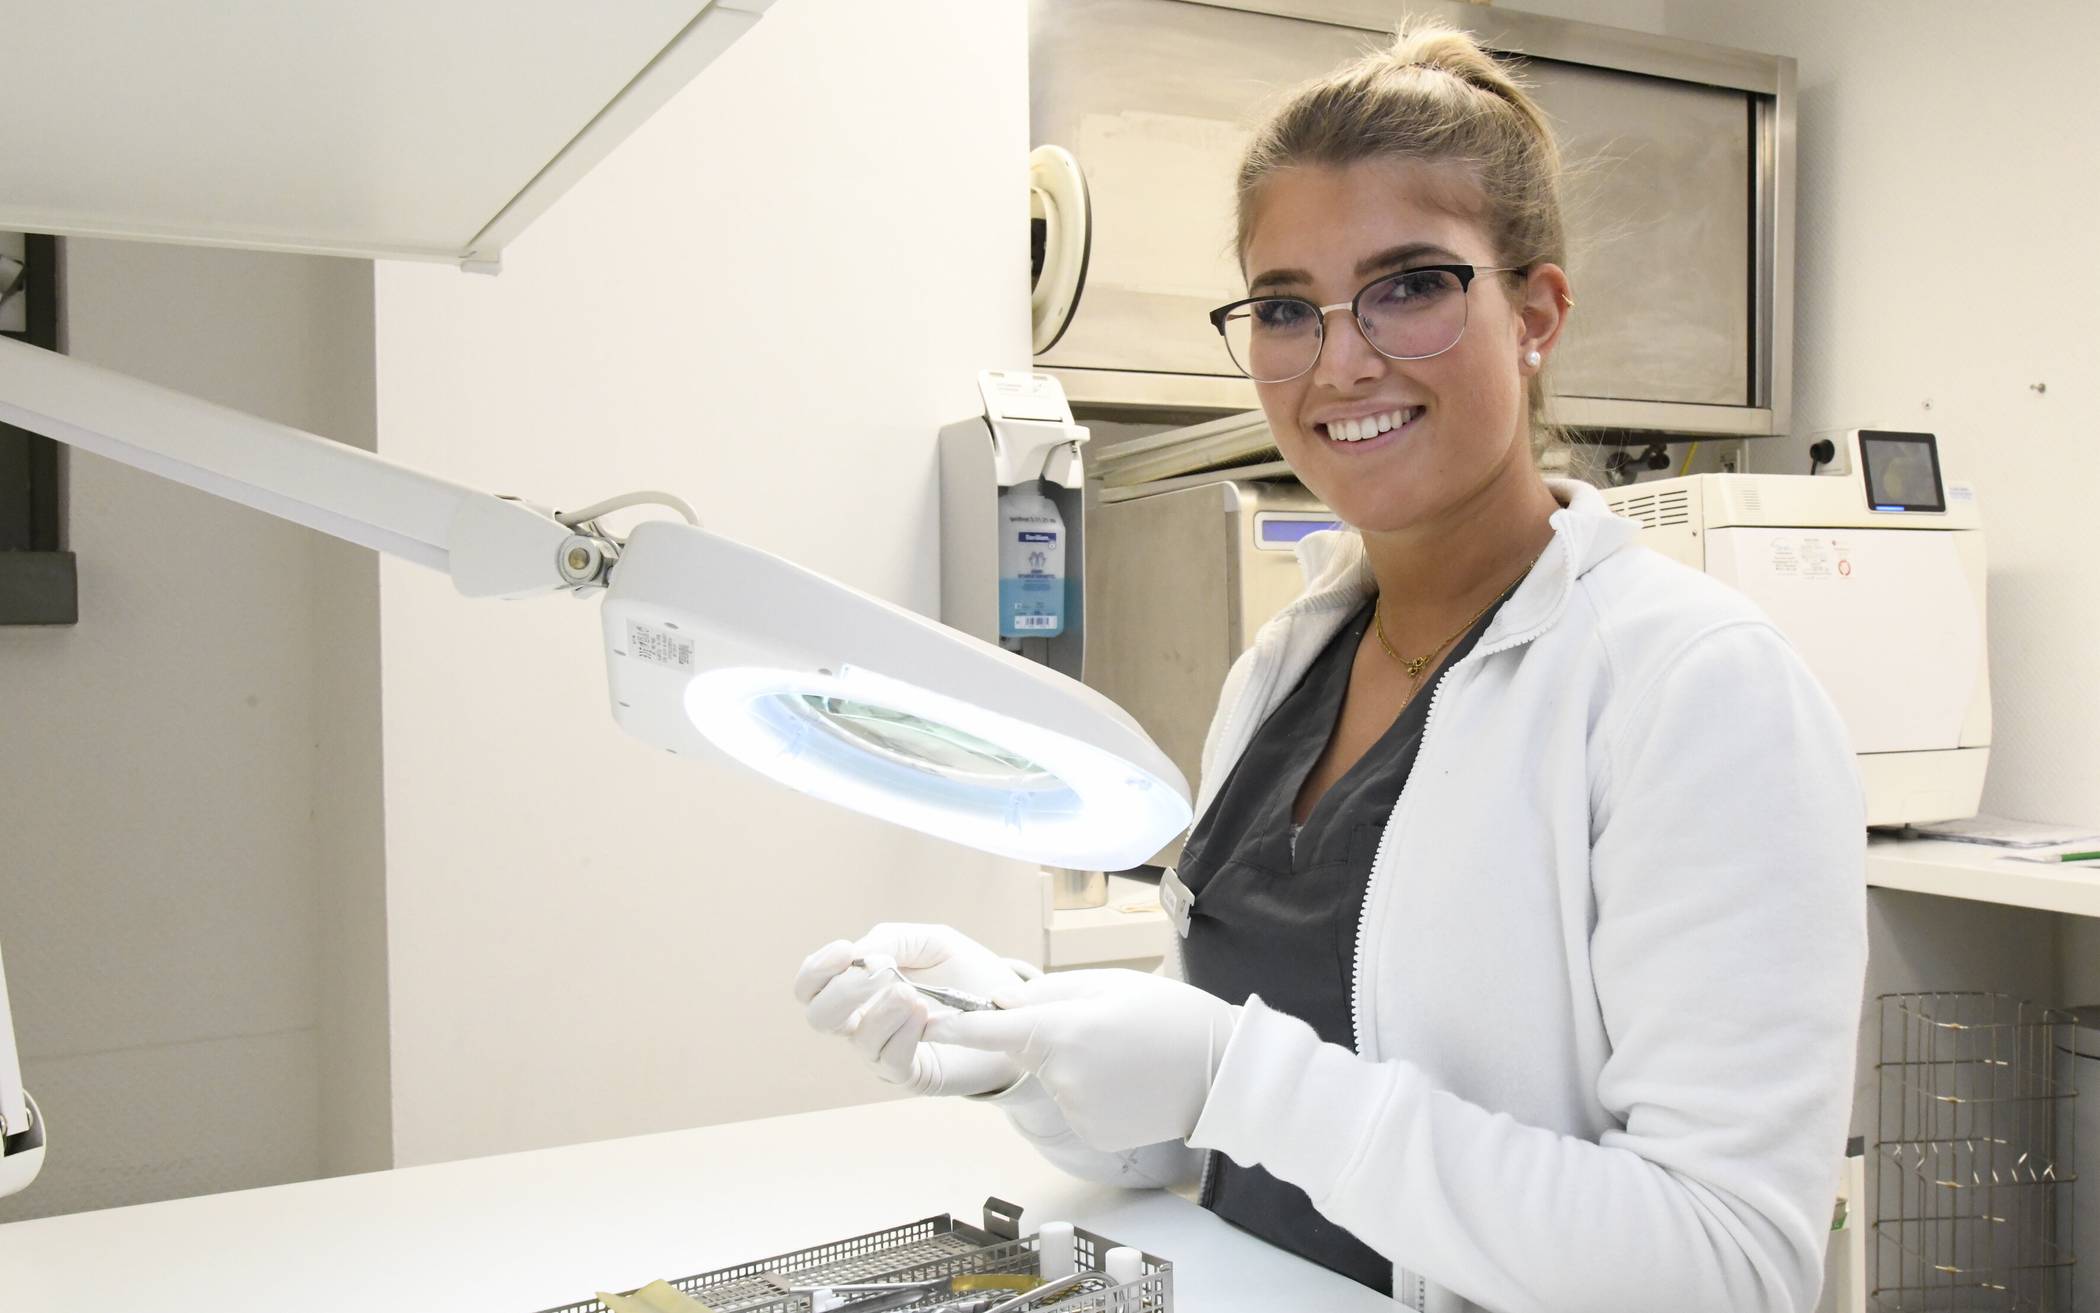   Lisa Sedivi (18) arbeitet als Auszubildende in der Praxis von Zahnarzt Dr. Erhard.  